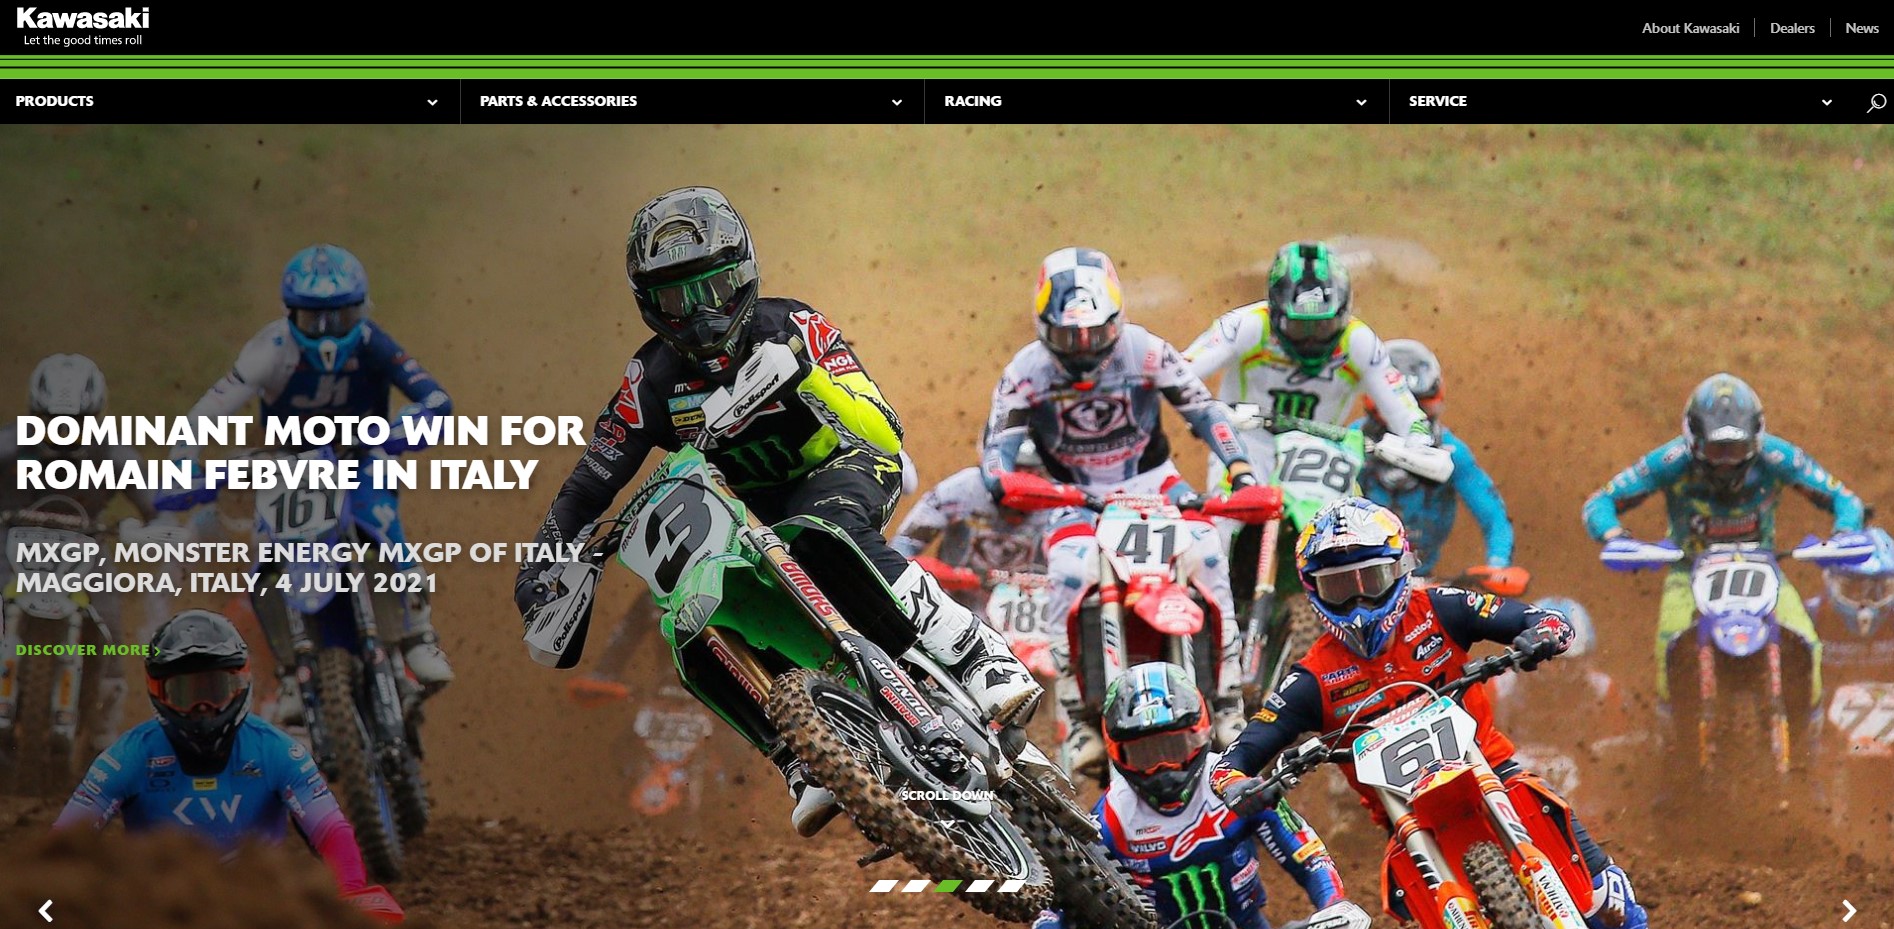 Kawasaki Racing 2021 aggiornamento contenuti sito internet - Anice web agency Torino